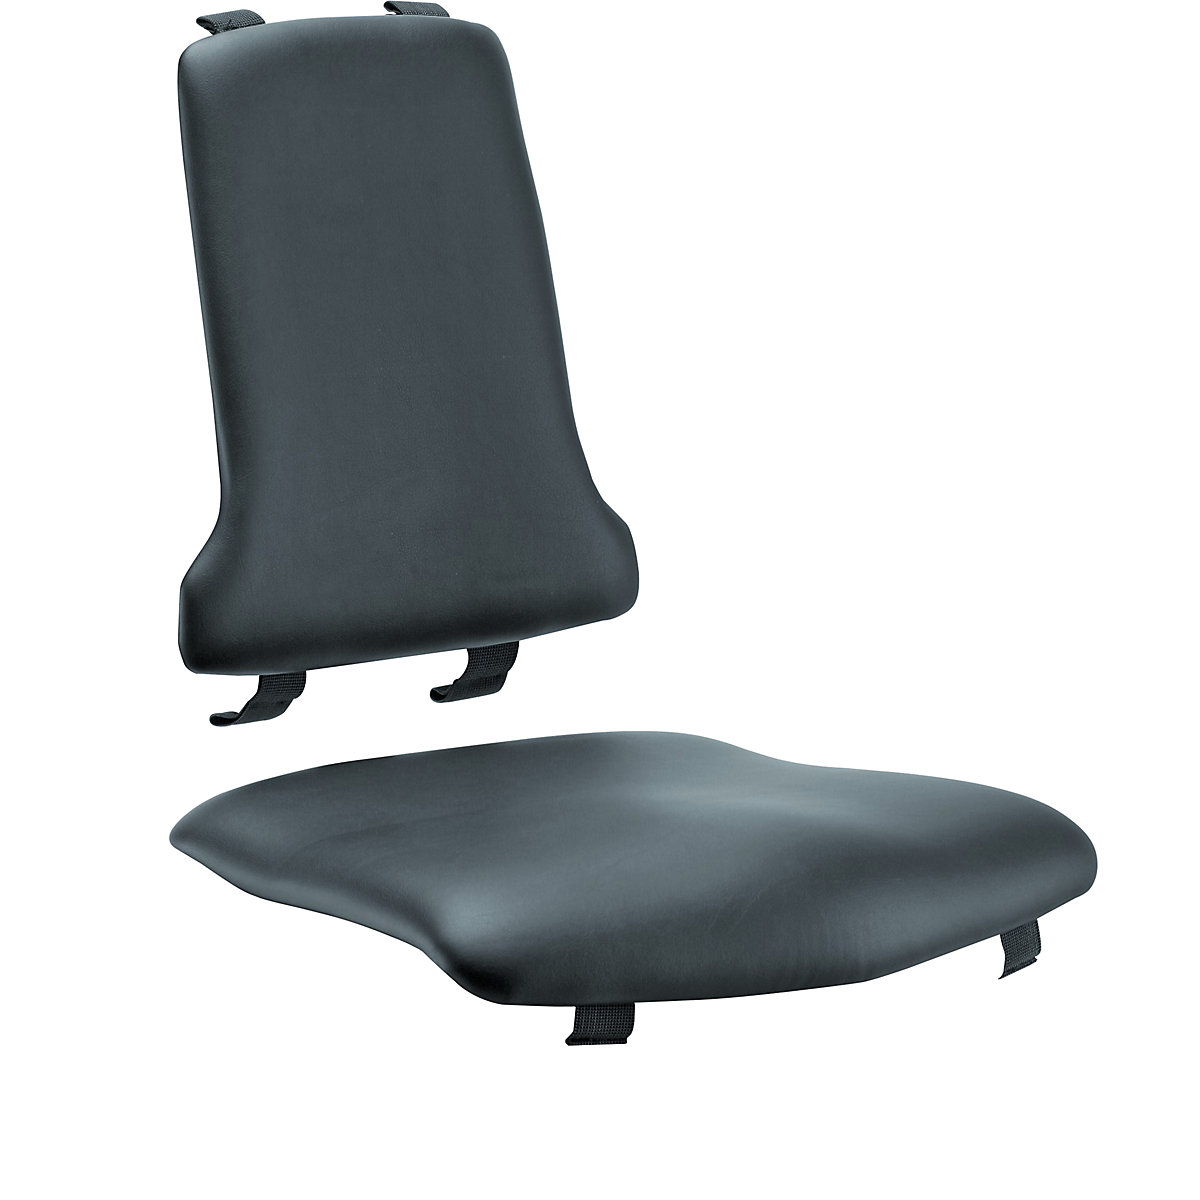 Polster bimos, Standard-Ausführung, je 1 Polster für Sitz und Rückenlehne, Kunstleder-Polster, schwarz-2